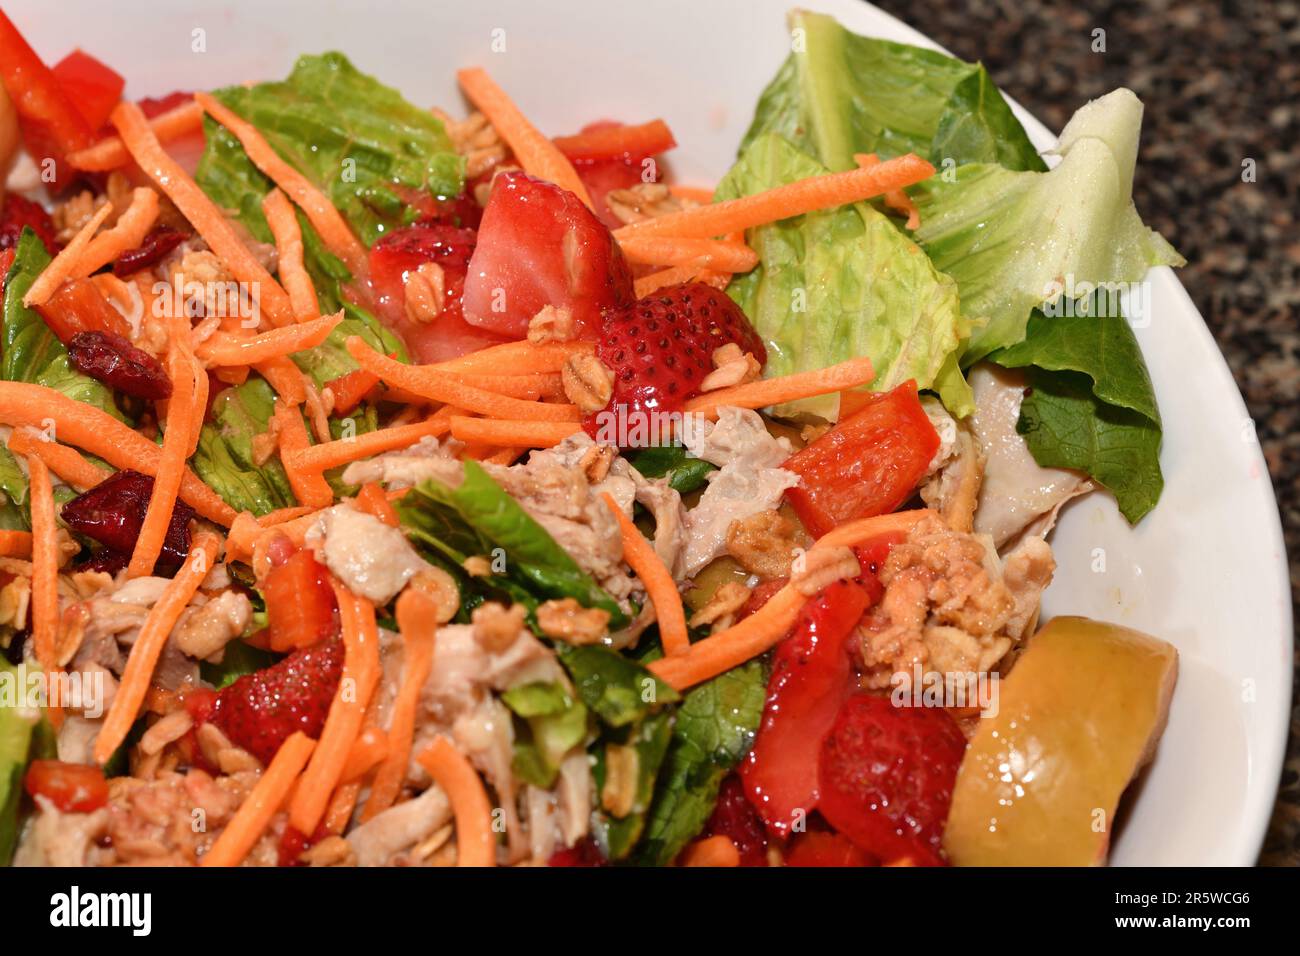 Ein frisch zubereiteter Salat mit Gemüse und Obst. Stockfoto